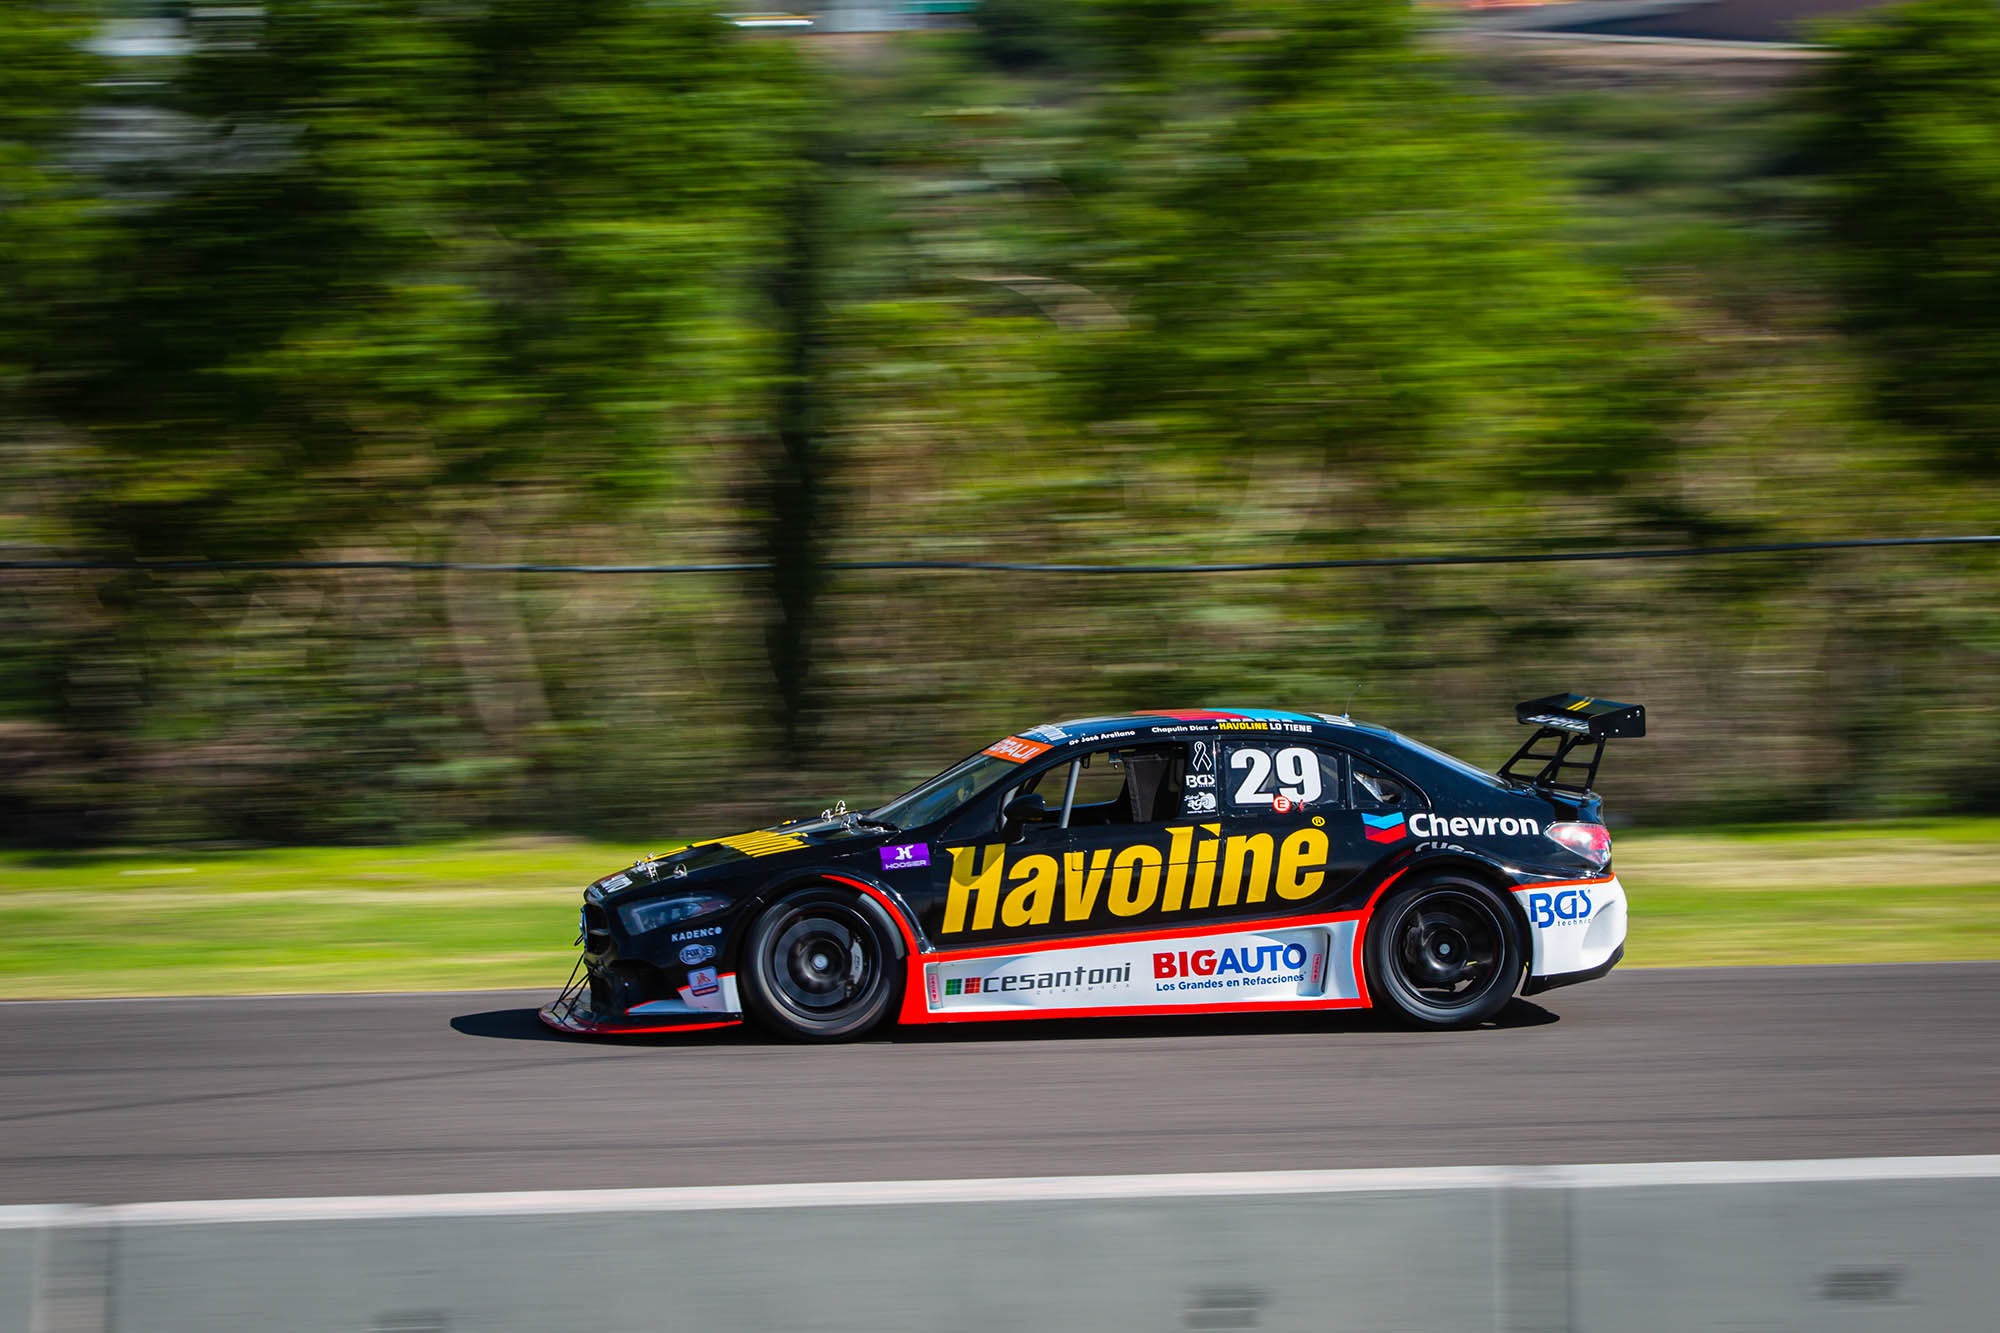 El Chevron Havoline big auto Racing Team, al podio de Querétaro en la GTM